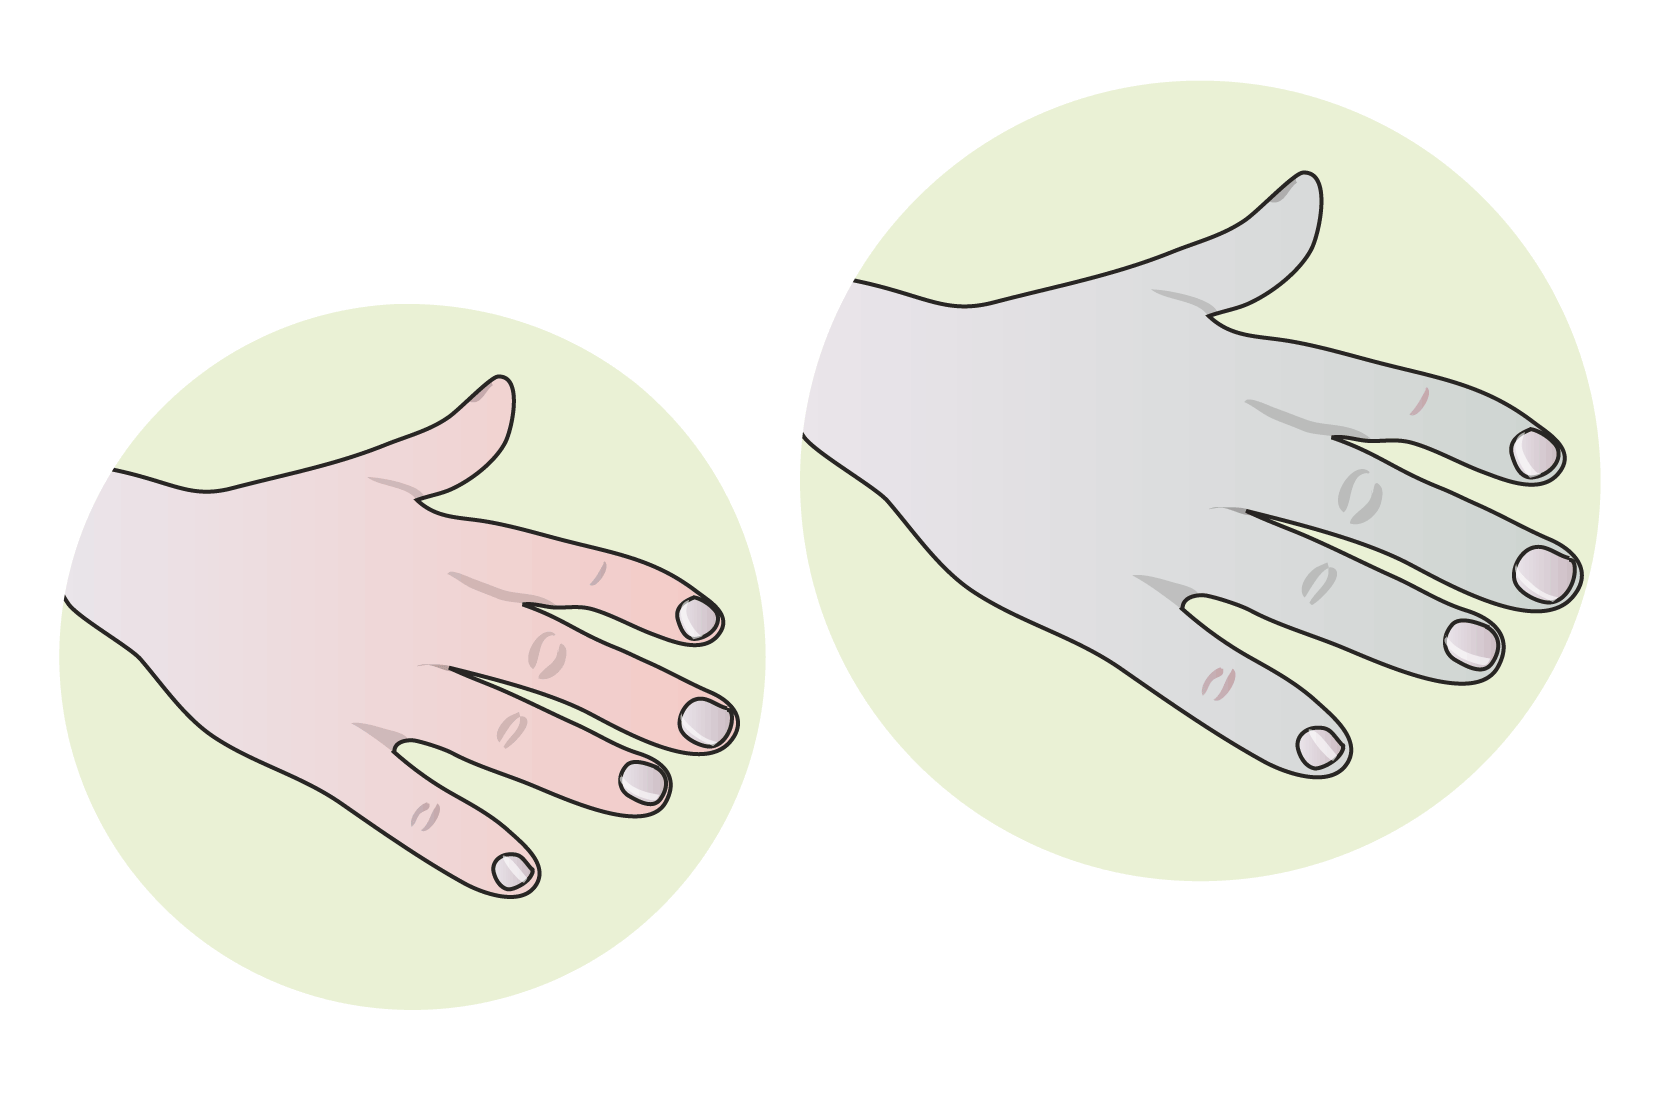 En bild av en beigefärgad hand och en bild av en likadan hand som är mer blåfärgad. Illustrationer.